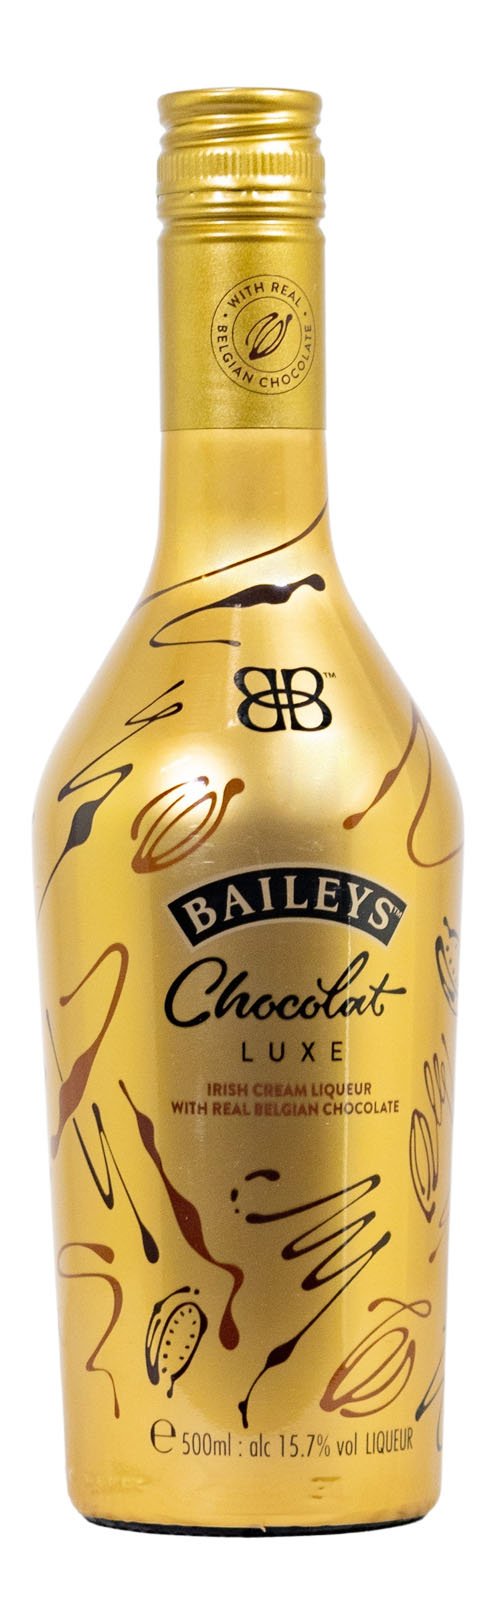 Baileys Chocolat Luxe Gold Edition kaufen (0,5L) günstig